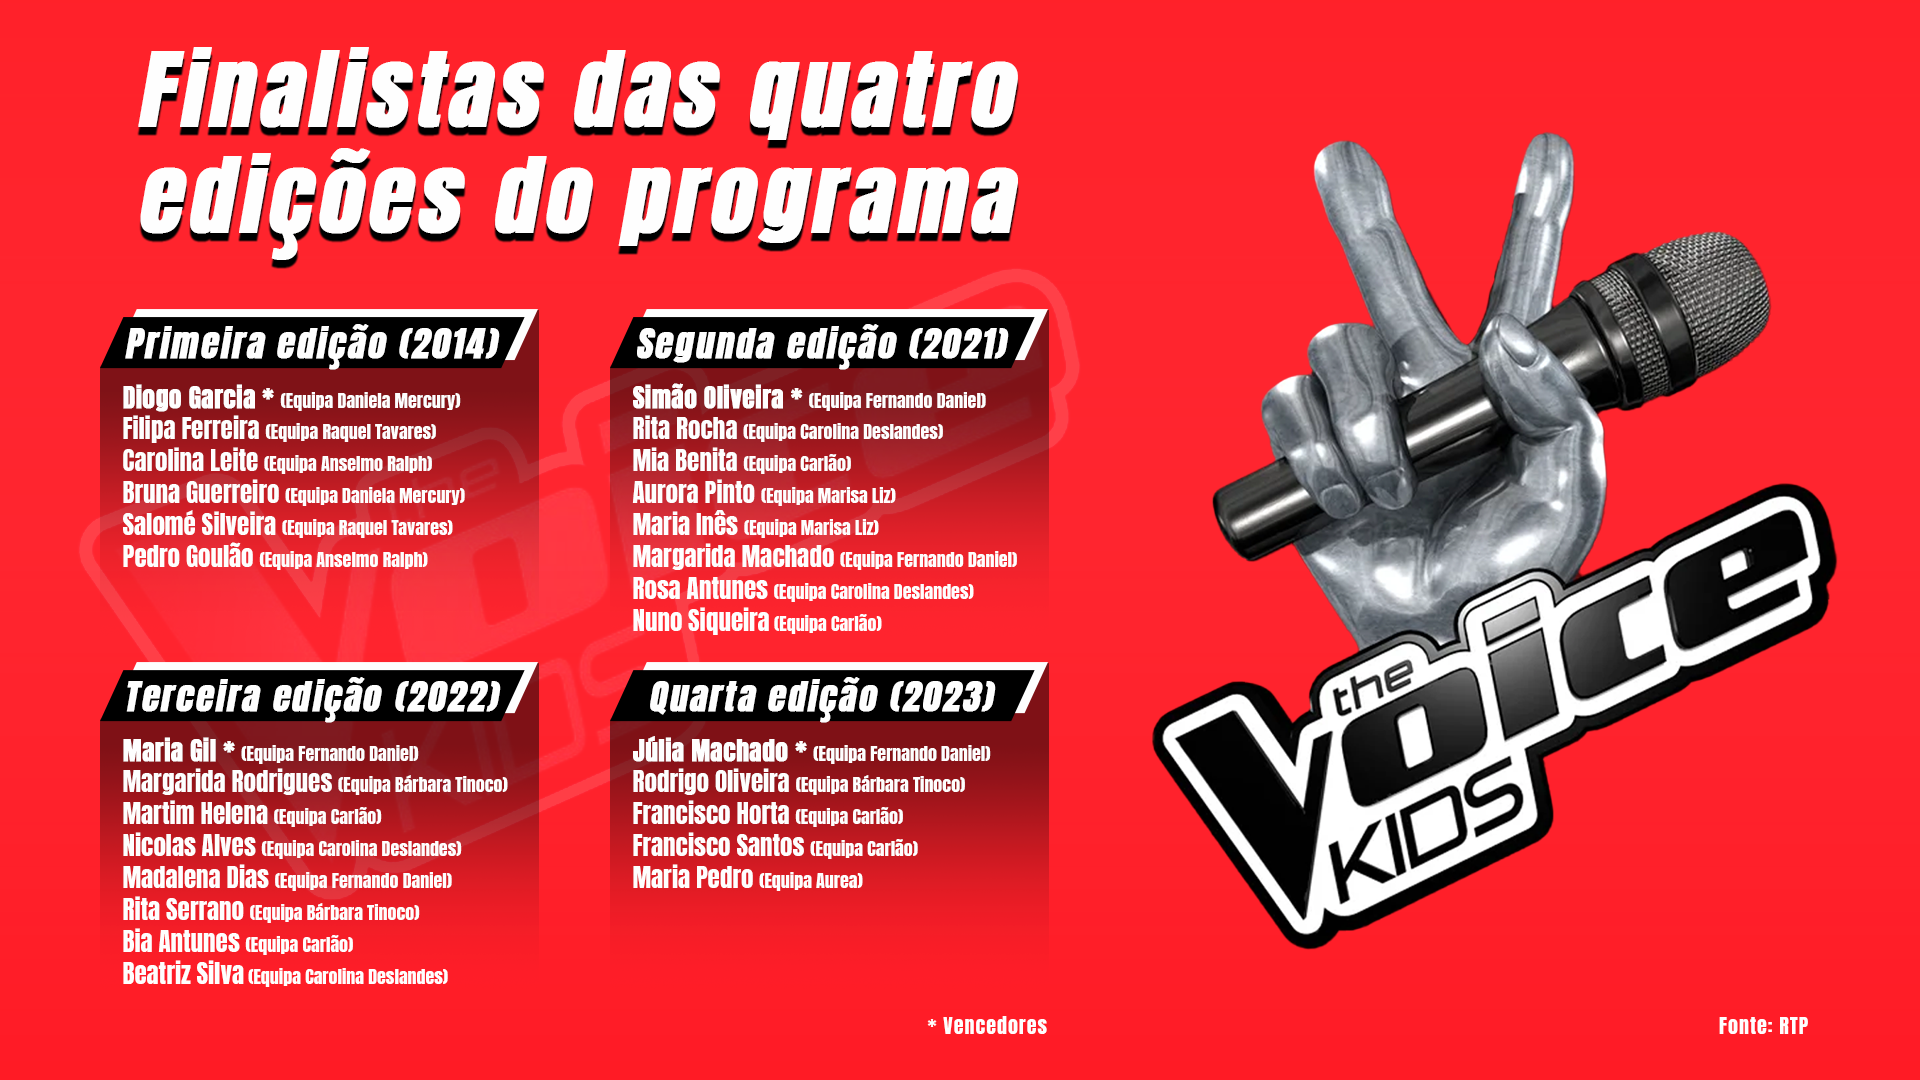 Os 27 finalistas do “The Voice Kids Portugal” nos últimos anos. Autor: Ricardo Rocha